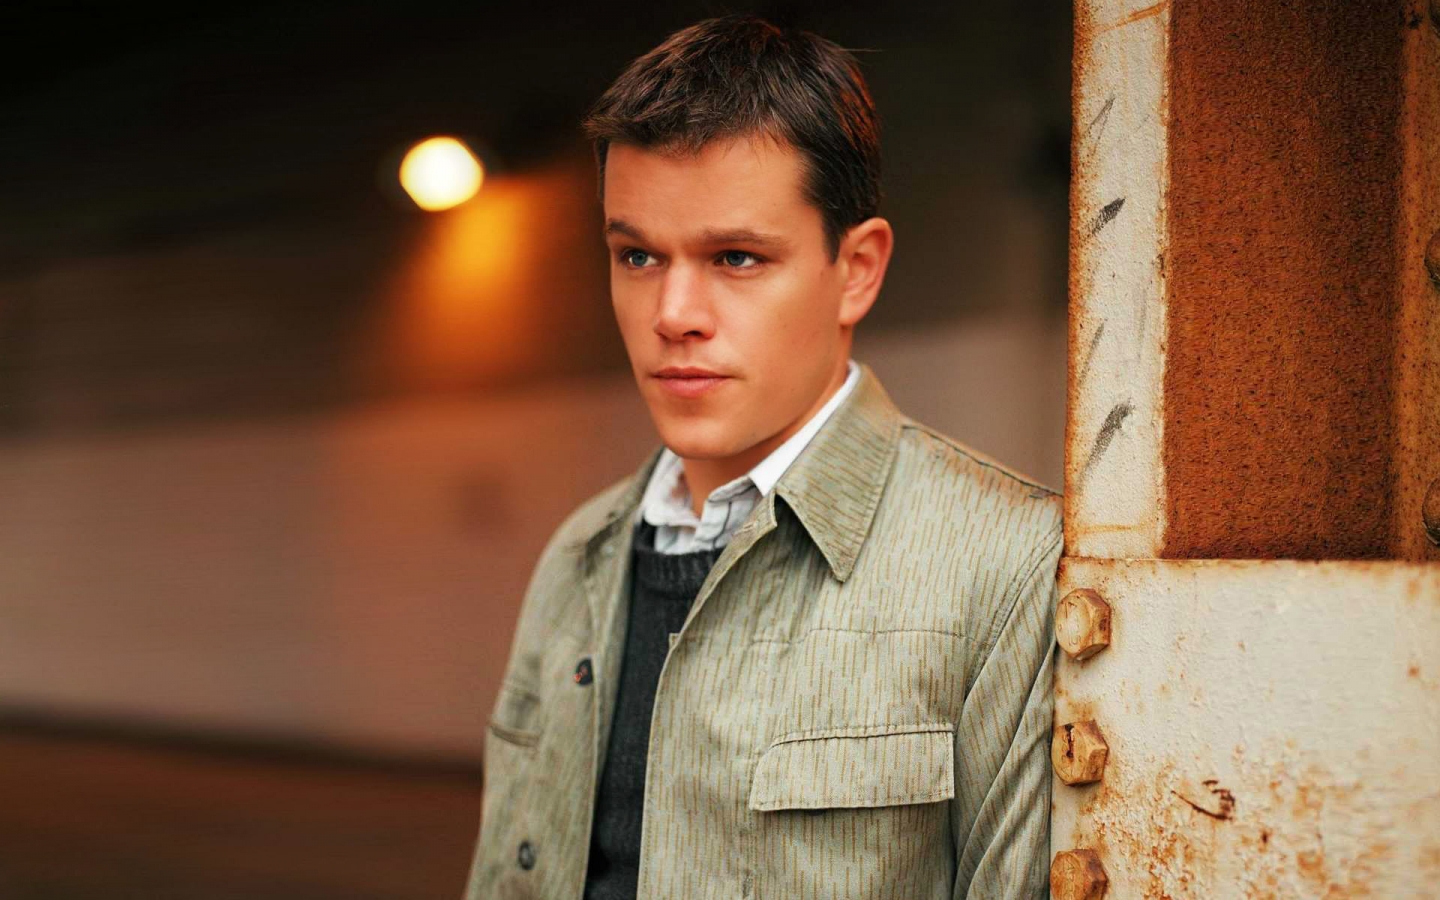 Young Matt Damon for 1440 x 900 widescreen resolution